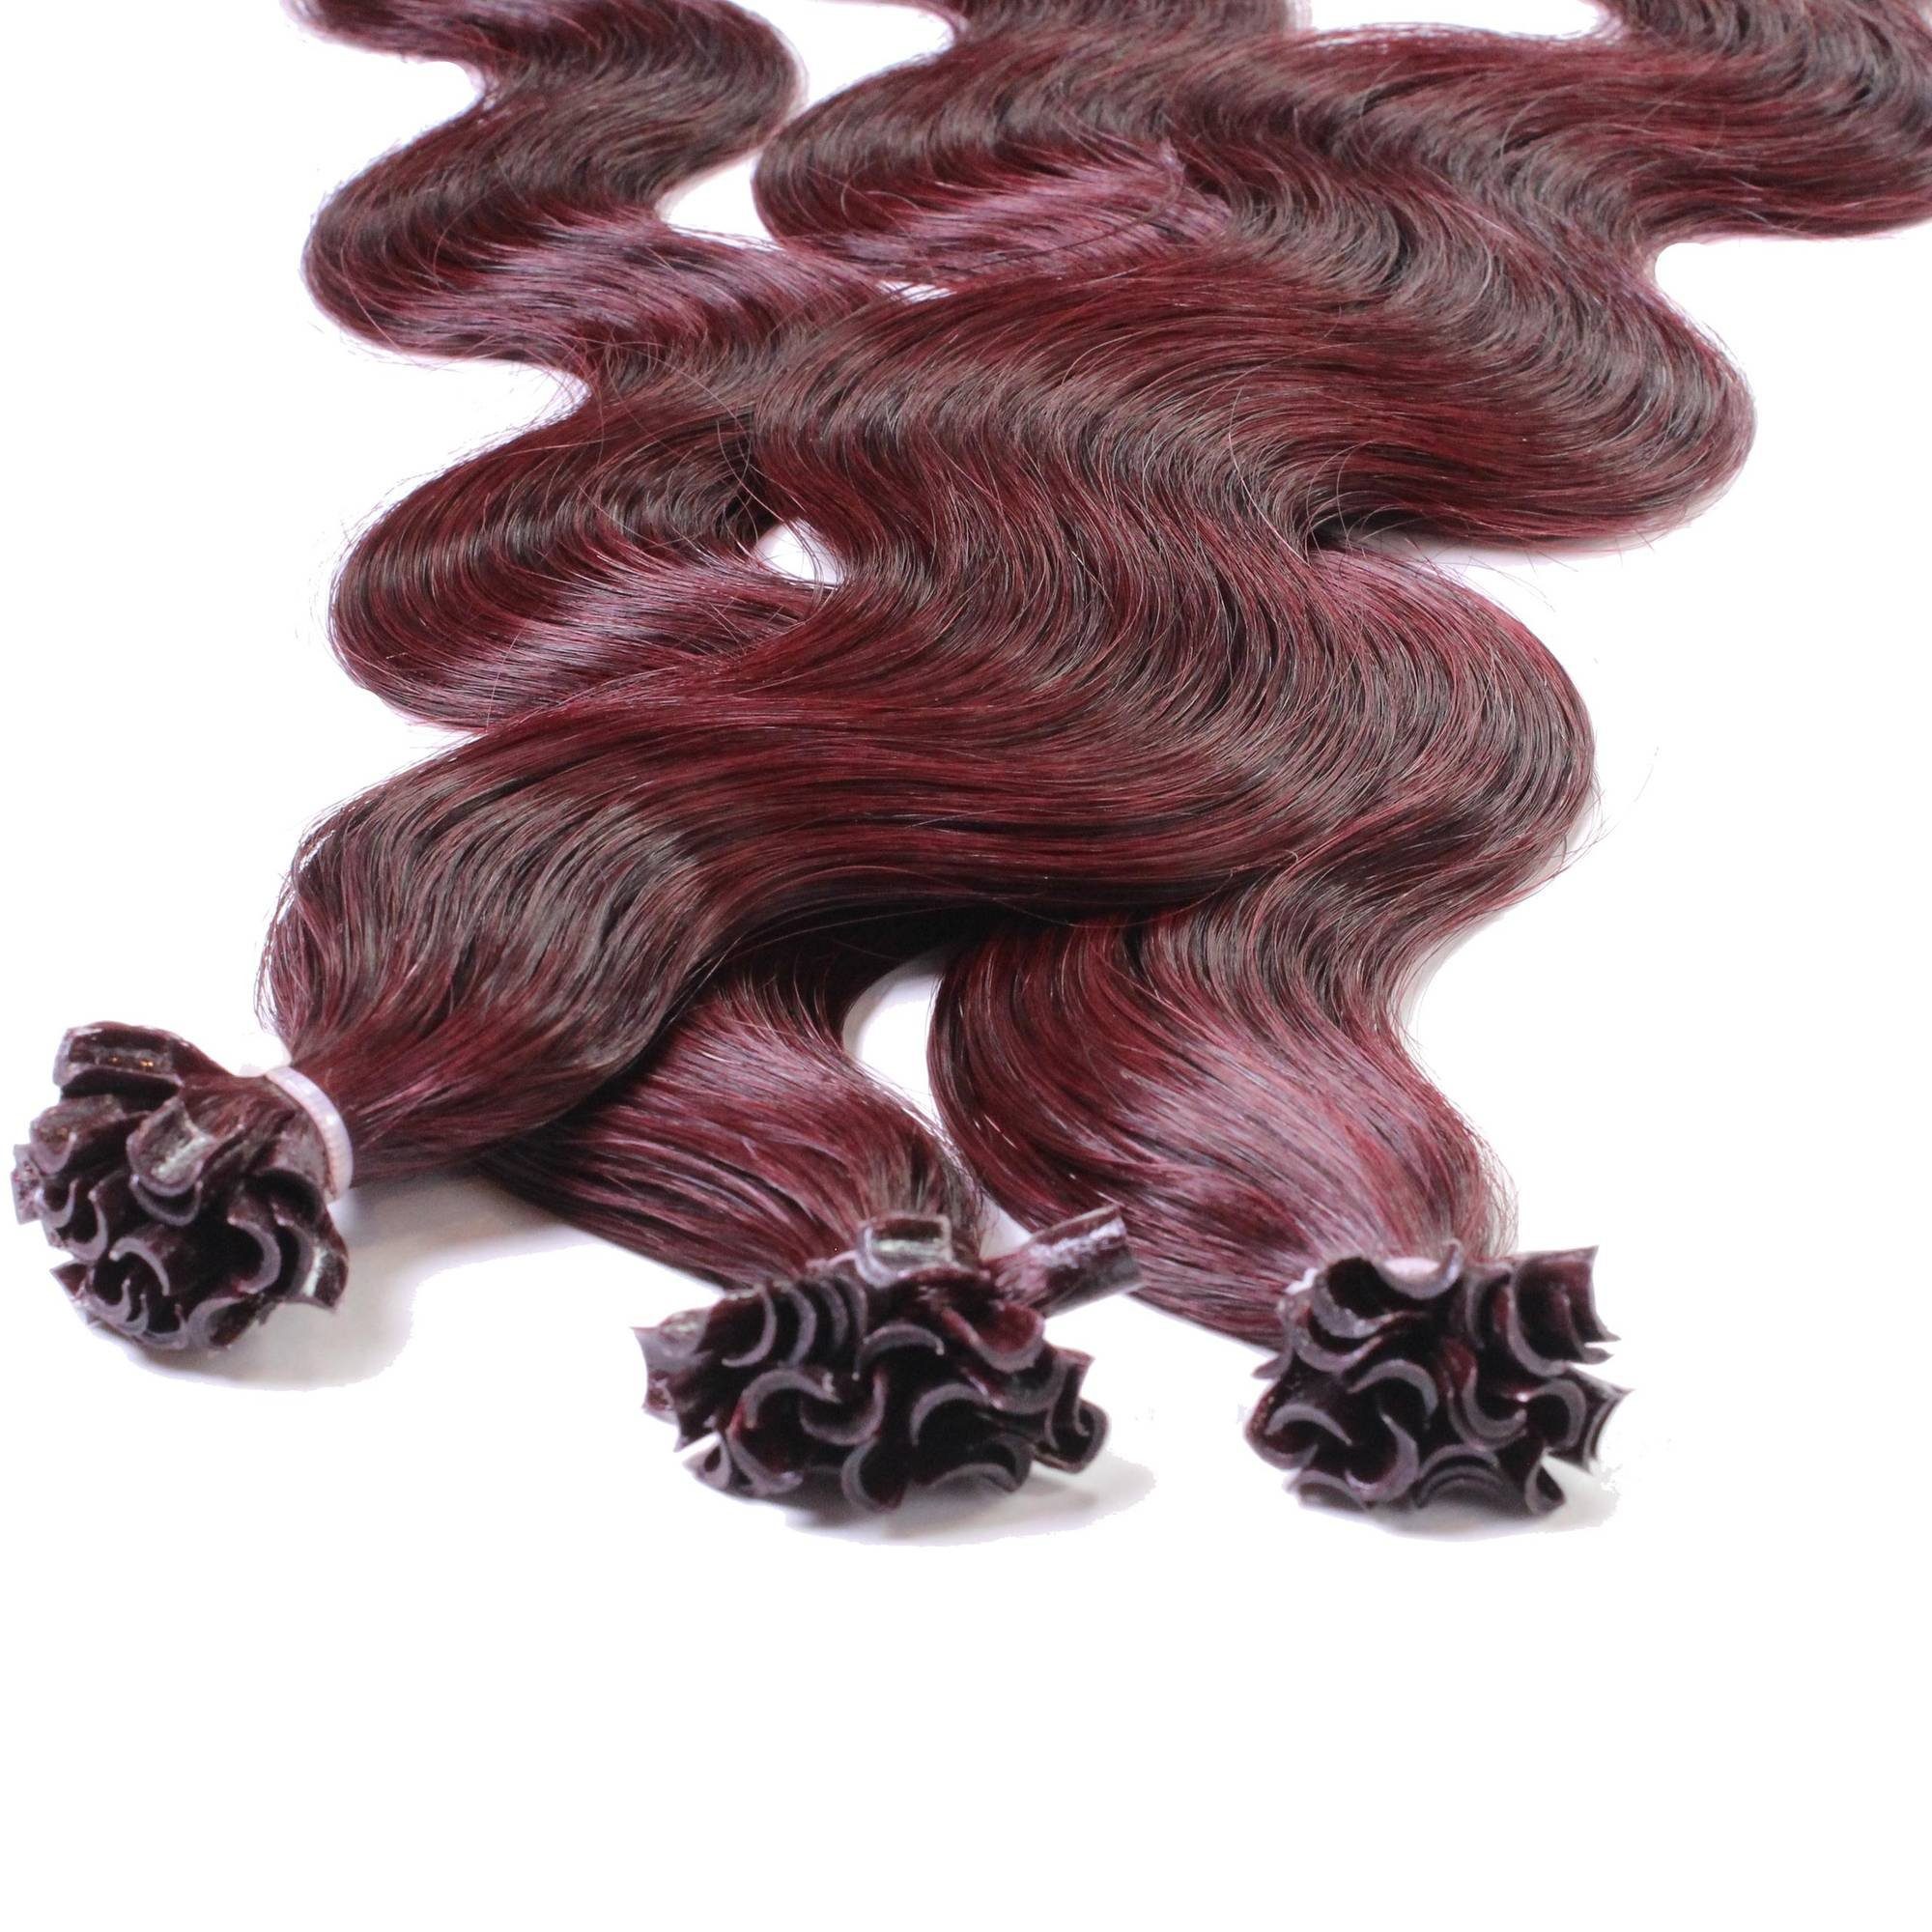 40cm gewellt Extensions Violett Echthaar-Extension Hellbraun hair2heart #55/66 0.5g Bonding